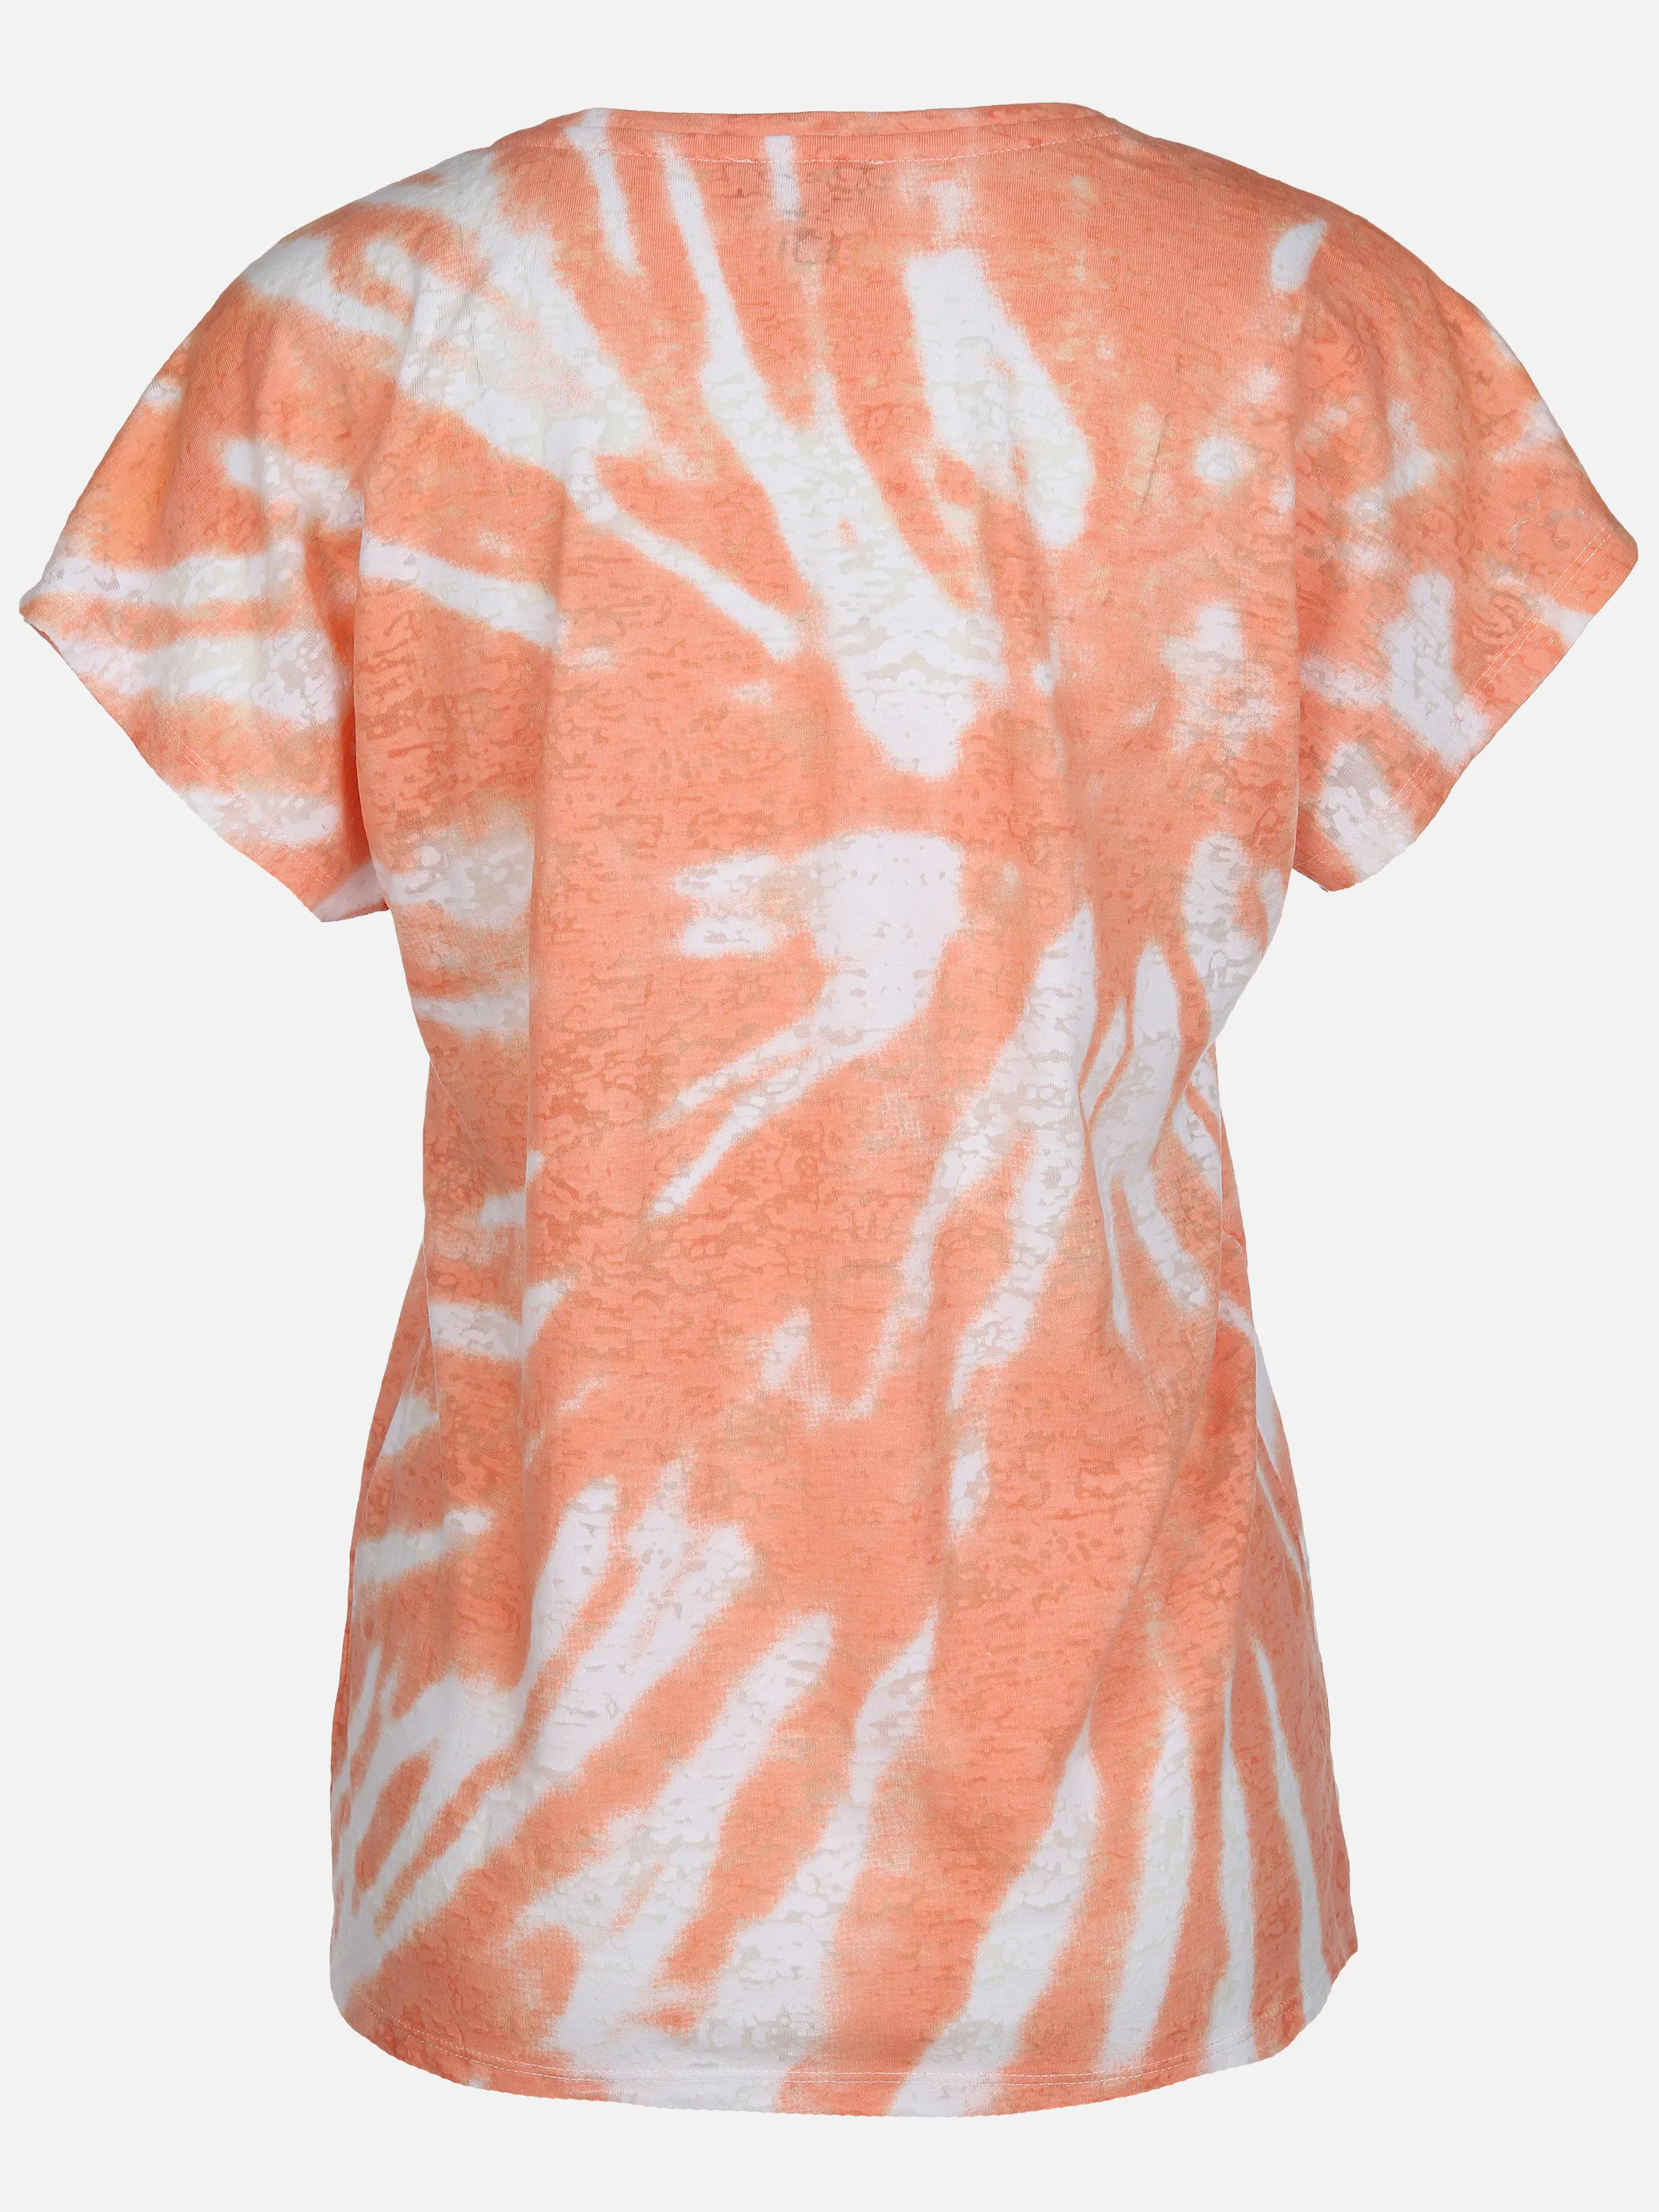 Sure Da-T-Shirt m. Batikdruck Orange 889927 PAPAYA 2